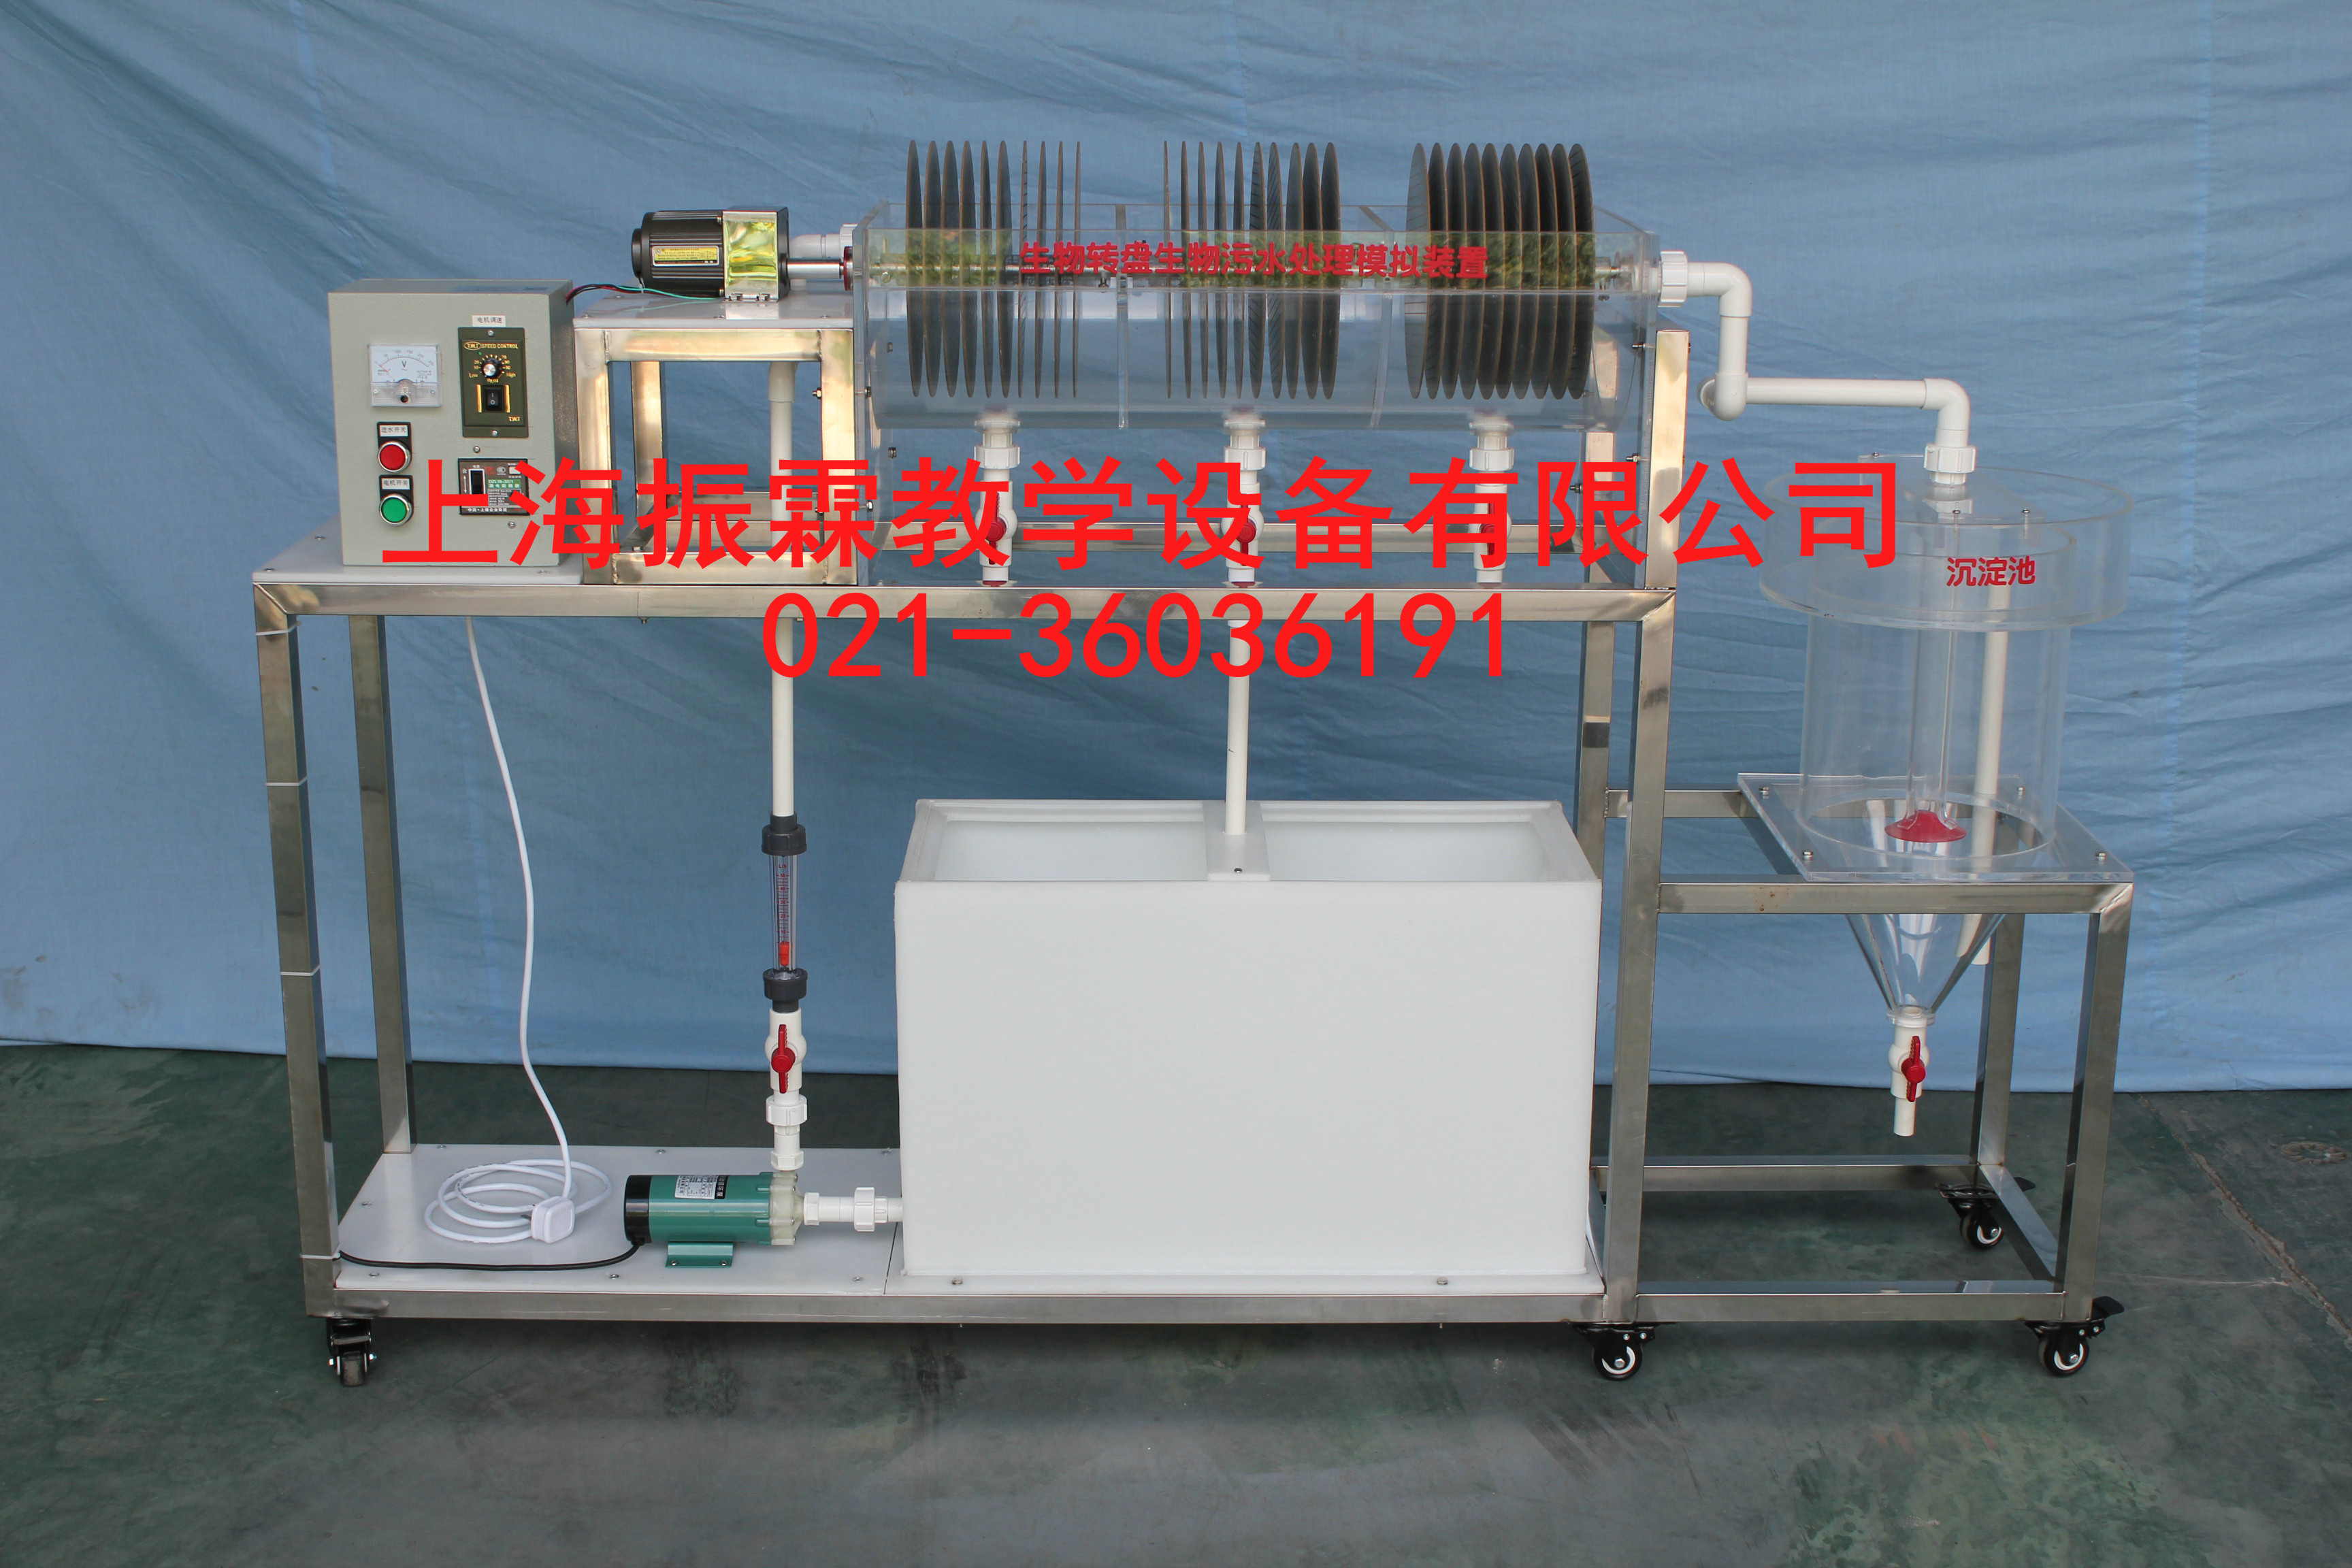 生物转盘生物污水处理模拟装置,生物转盘生物污水处理模拟设备--上海振霖公司